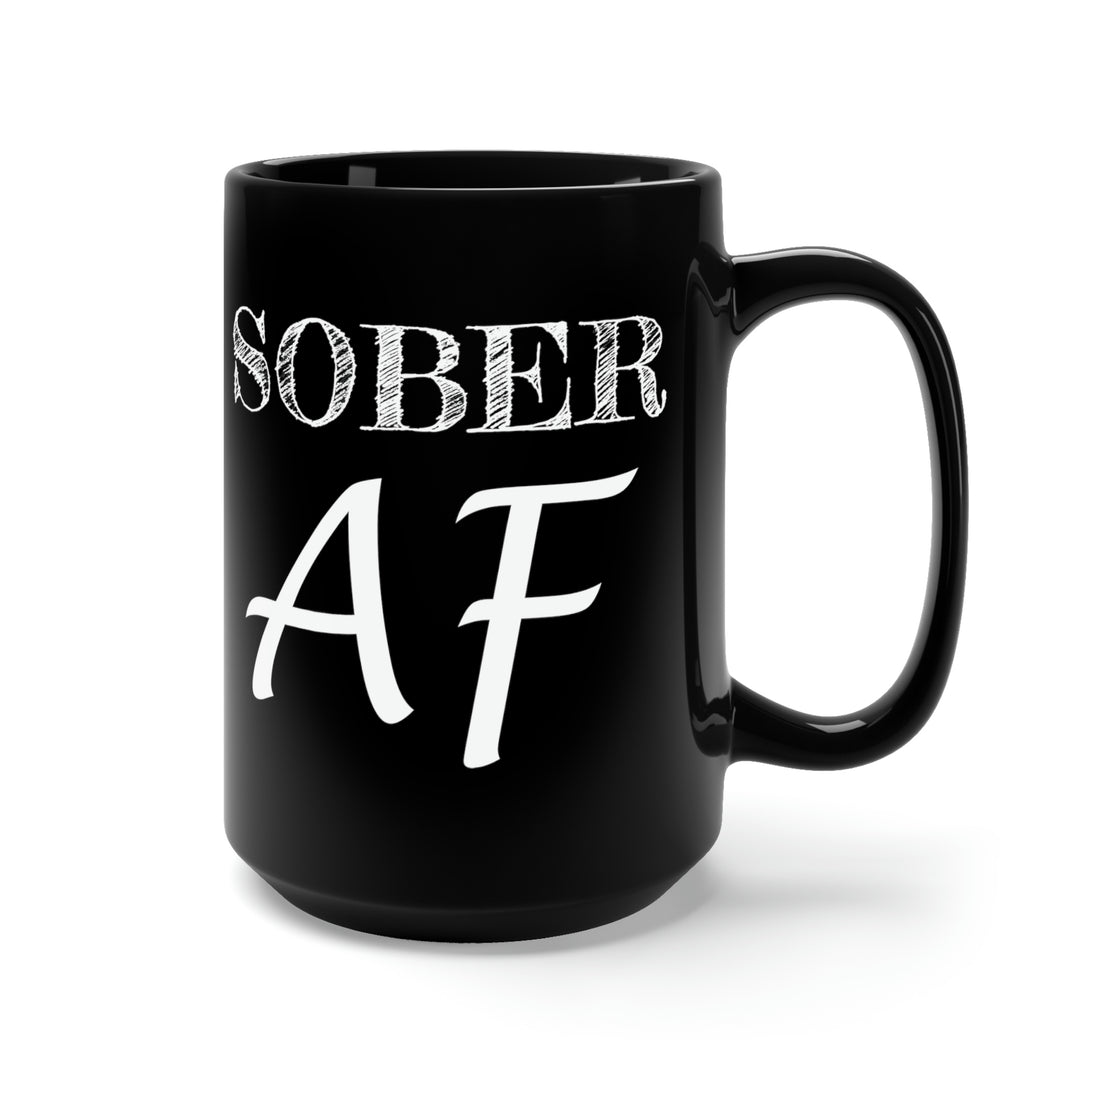 Sober AF - Large 15oz Black Mug